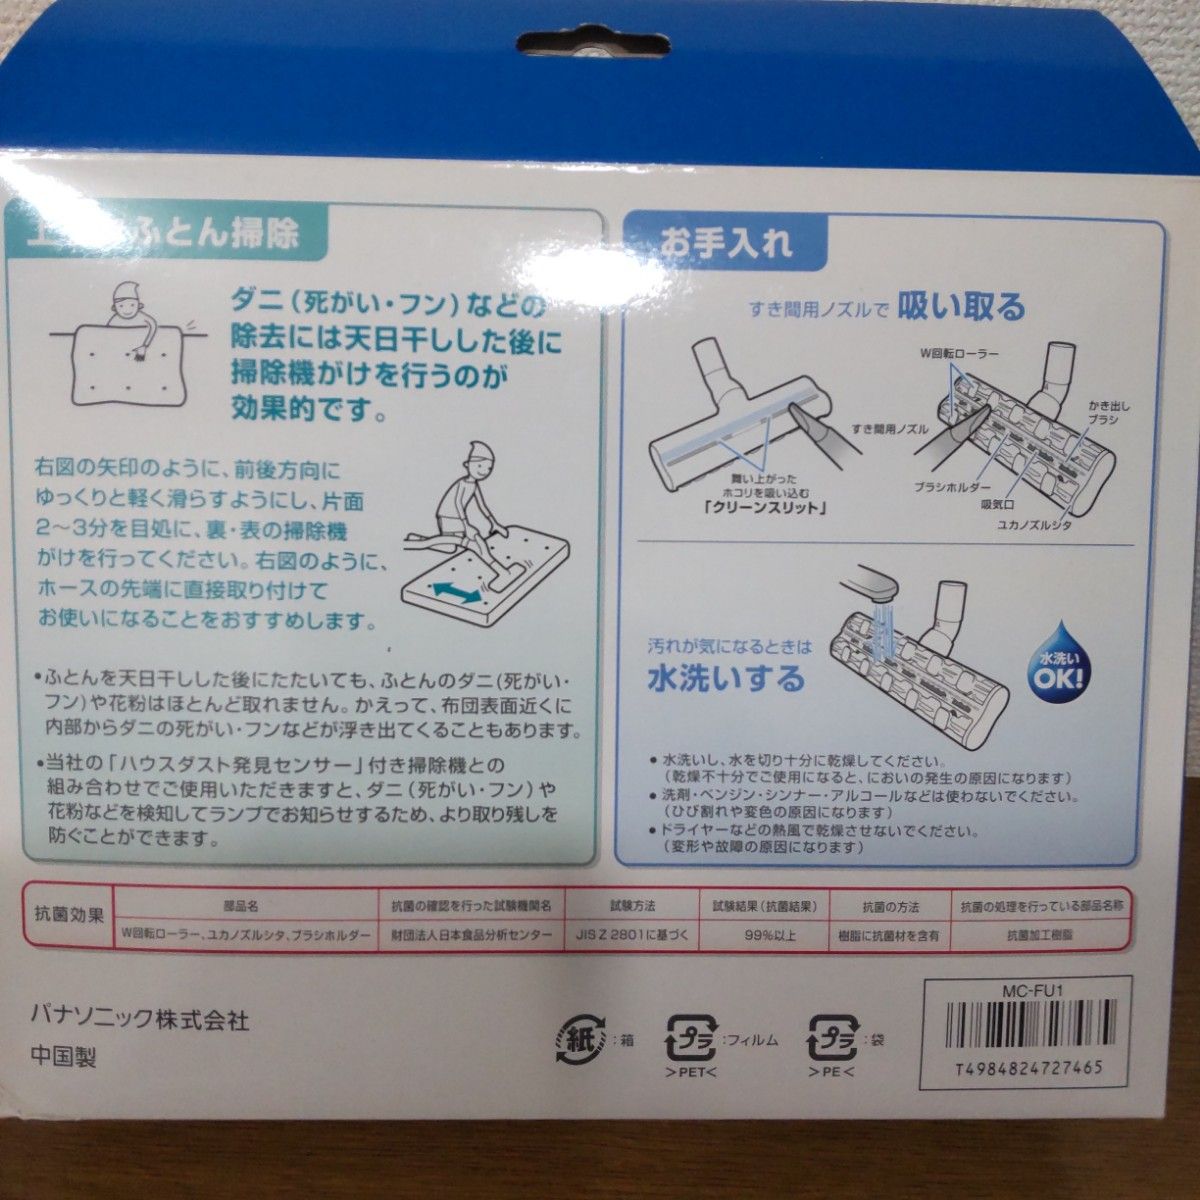 【未開封】Panasonic パナソニック ふとん清潔ノズル MC-FU1 ふとんクリーナー